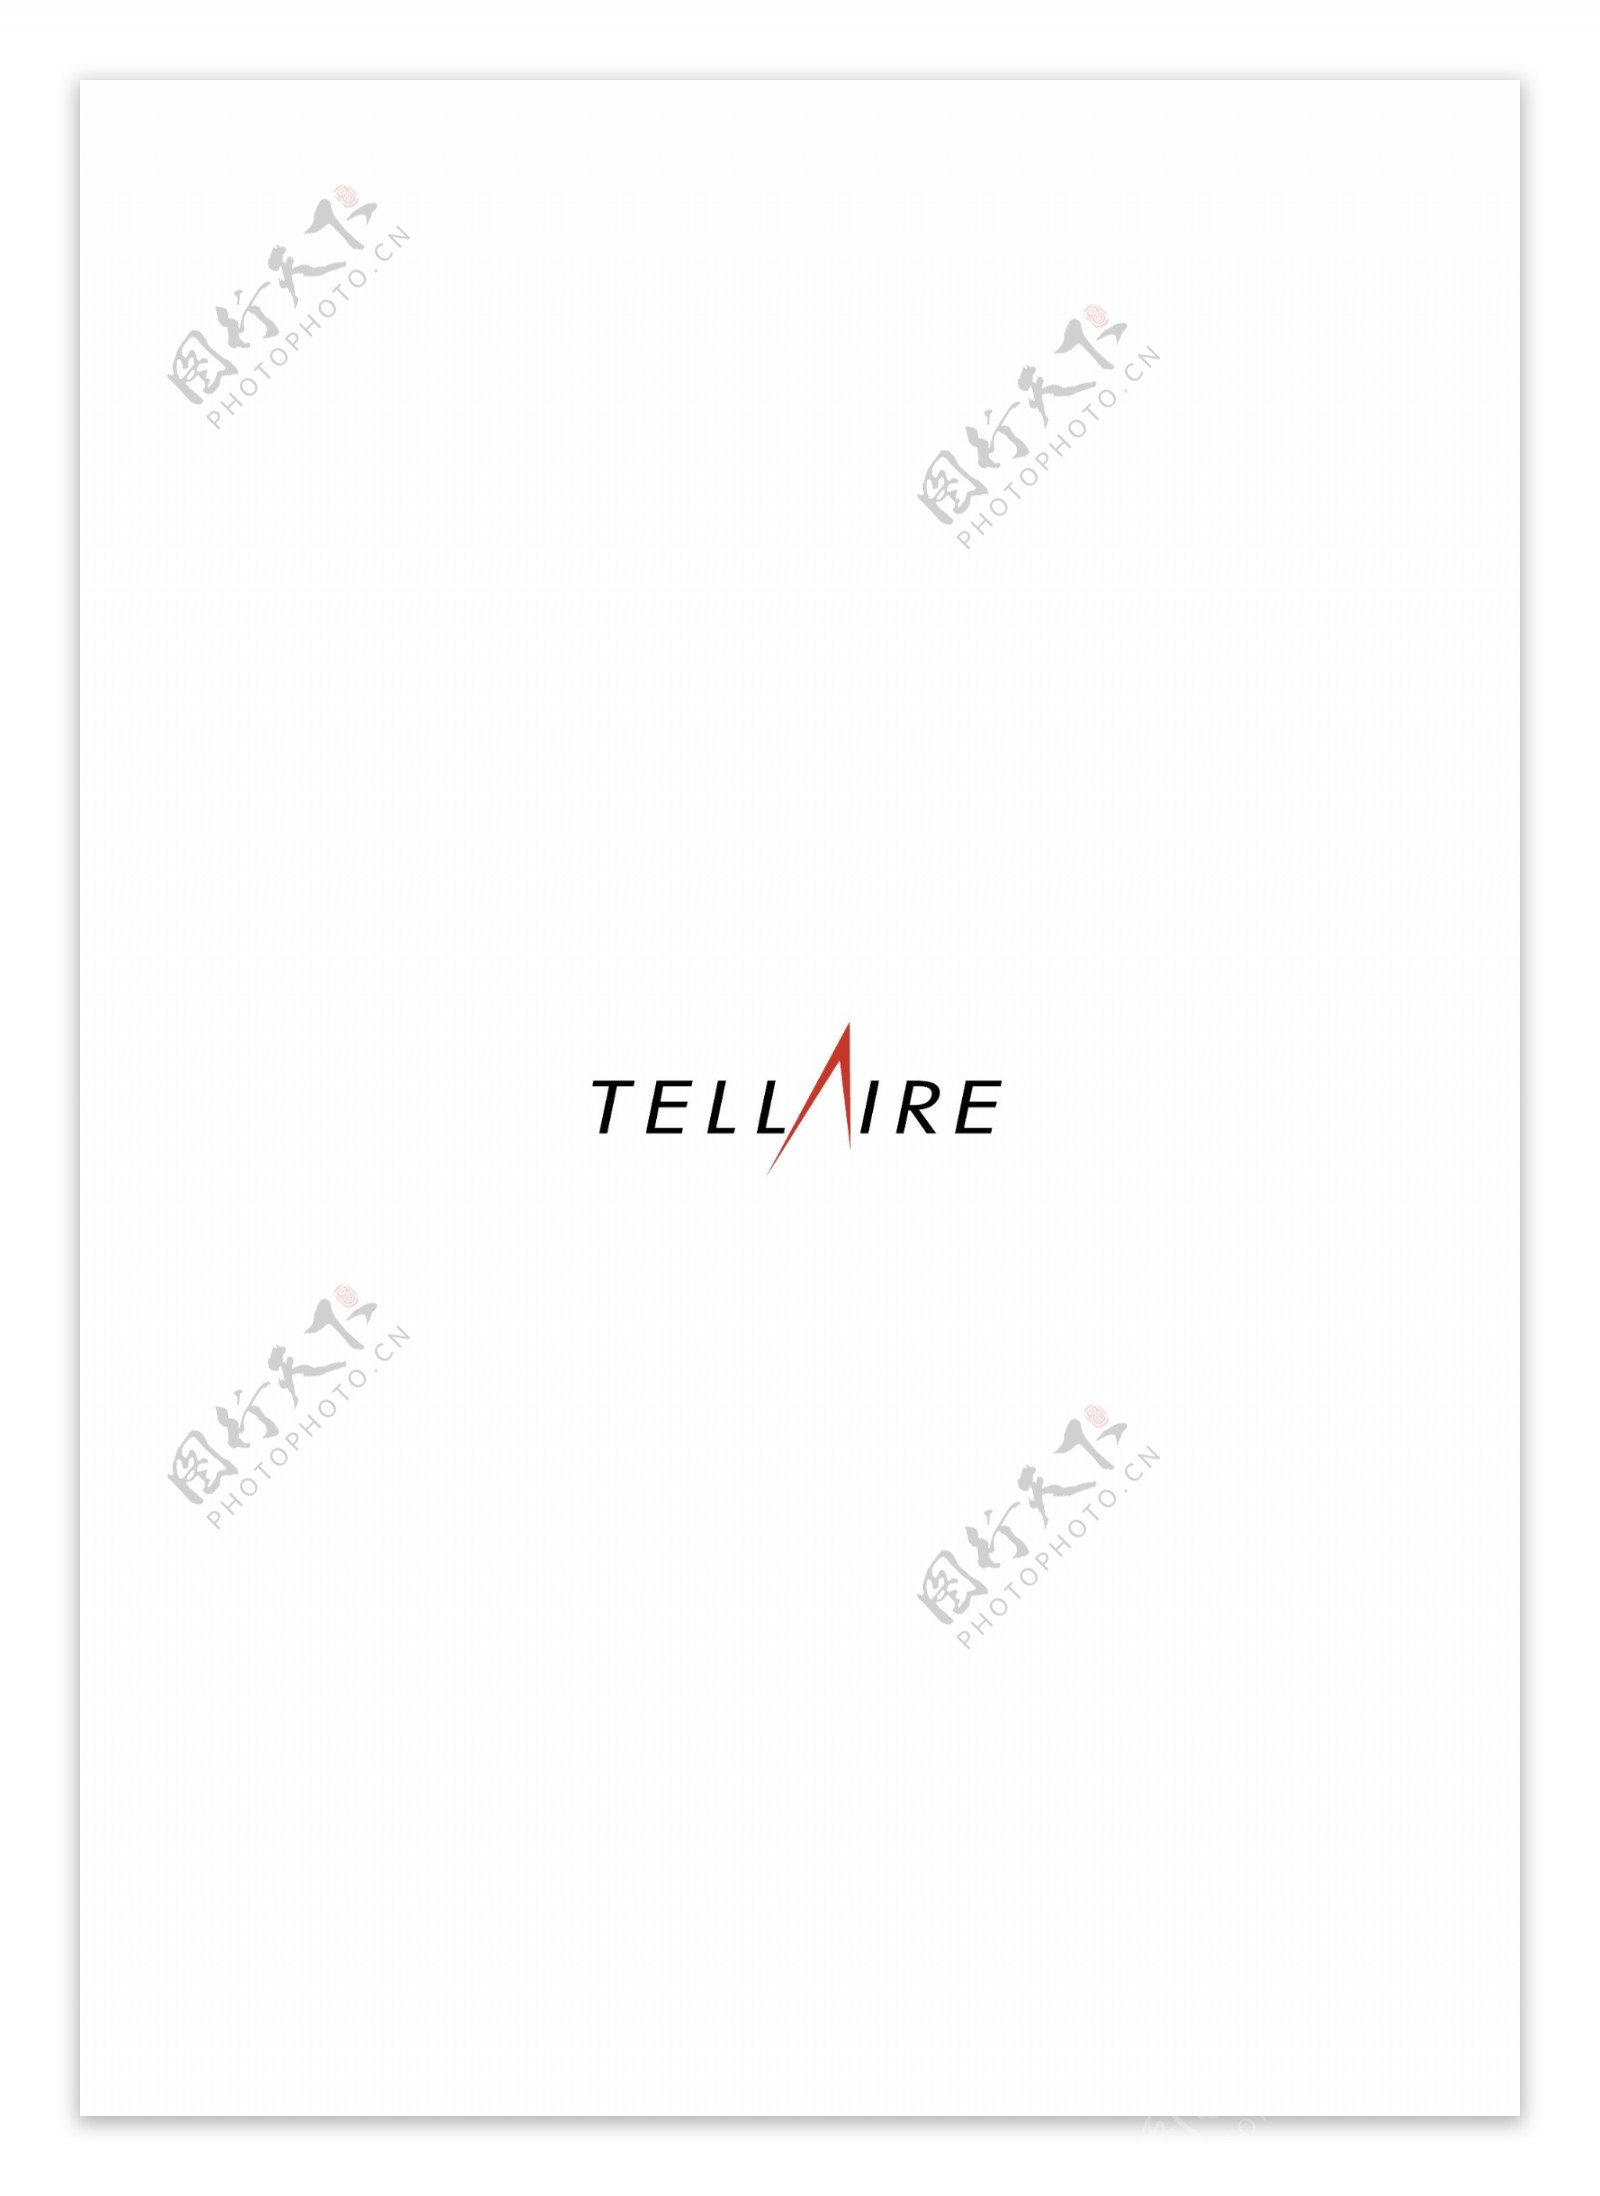 Tellairelogo设计欣赏Tellaire移动通讯标志下载标志设计欣赏